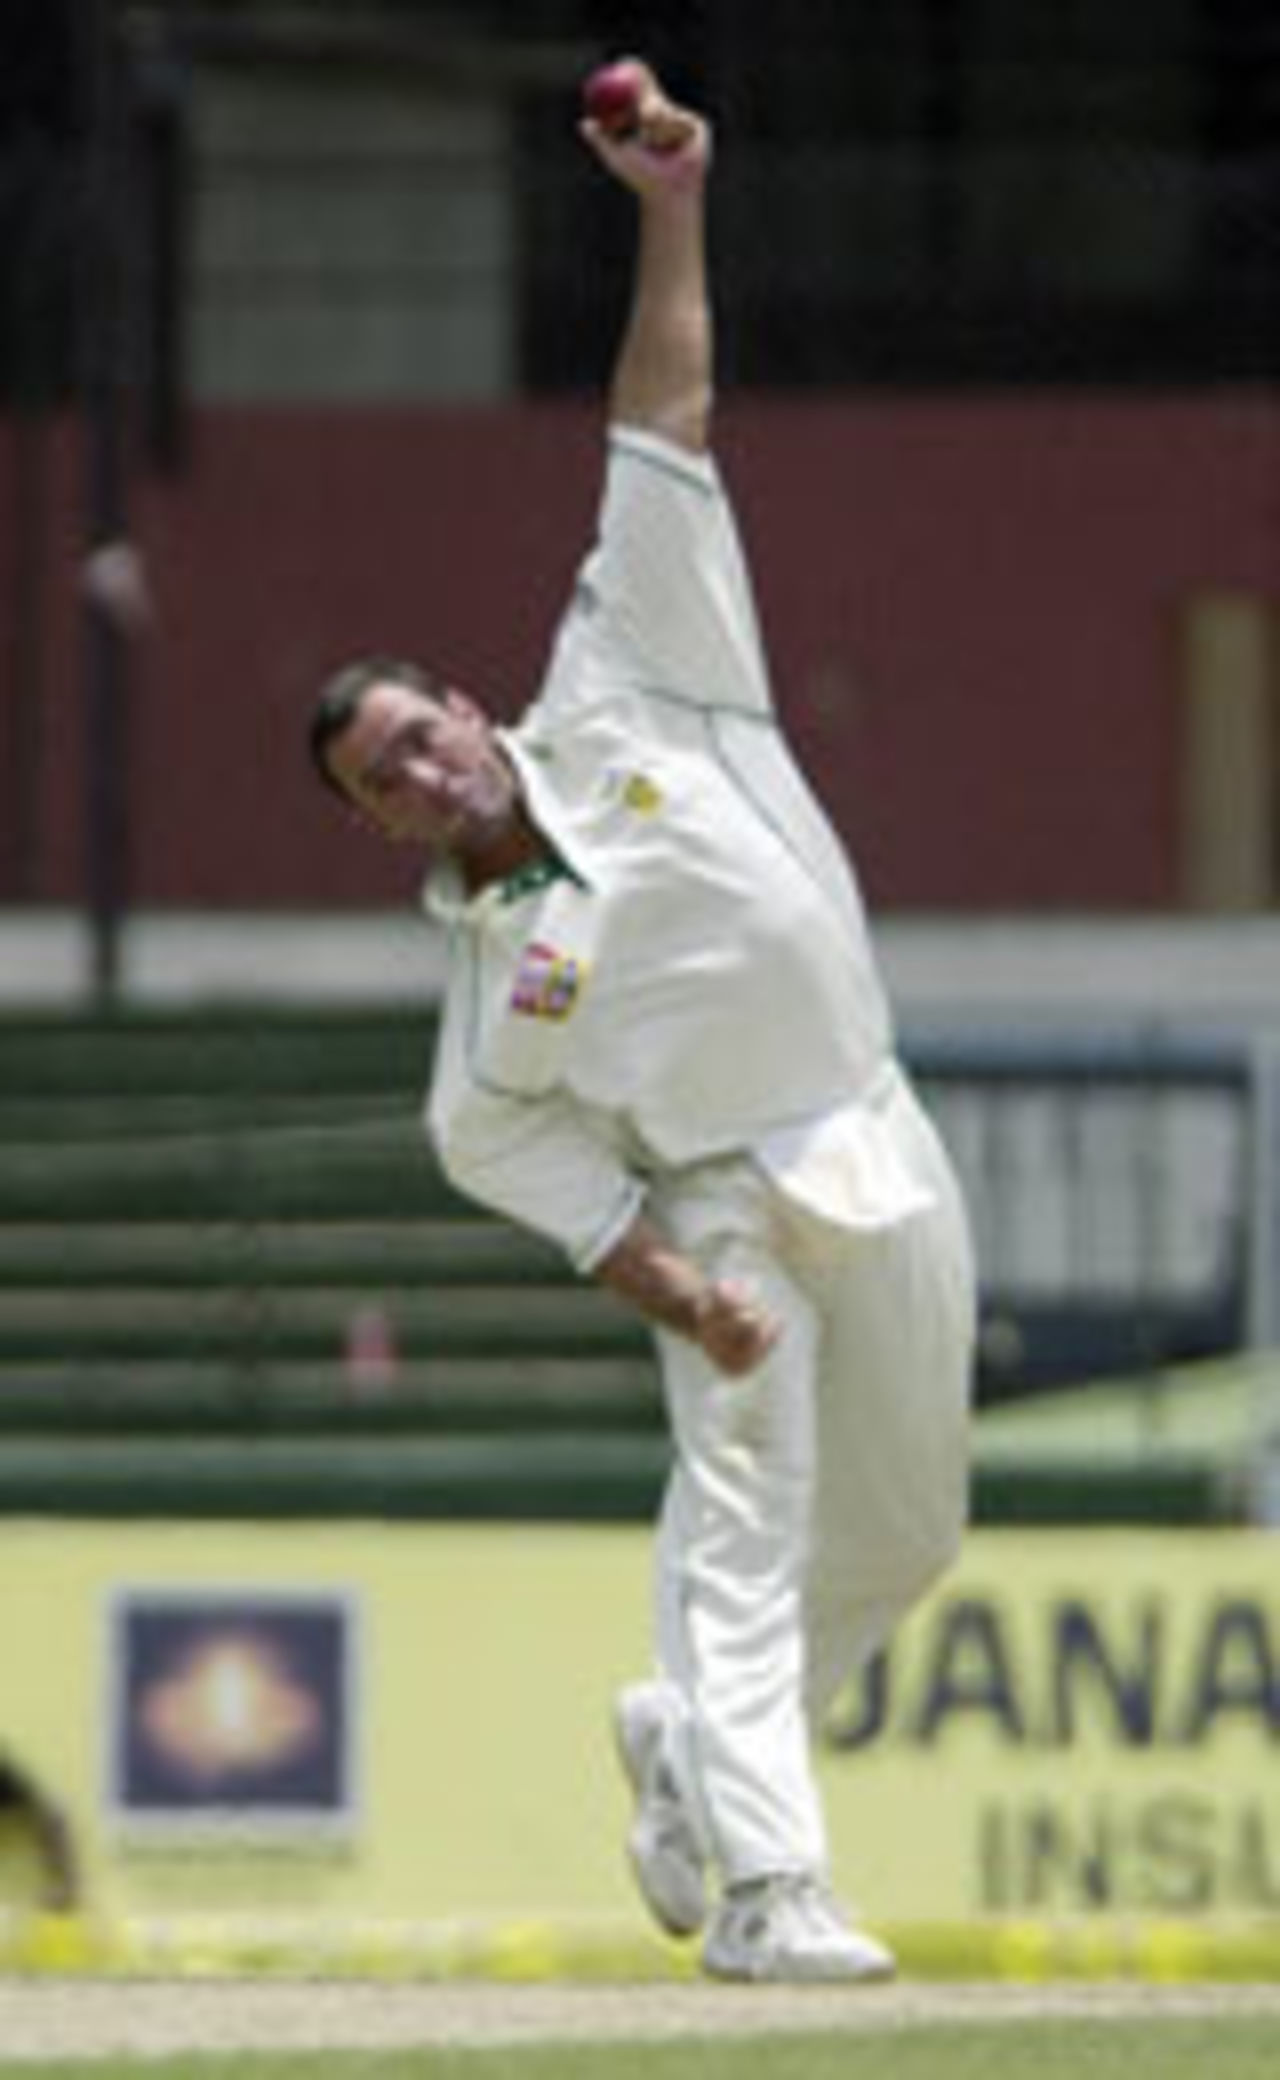 Nicky Boje bowling, Sri Lanka v South Africa, 2nd Test, Colombo, August 11, 2004